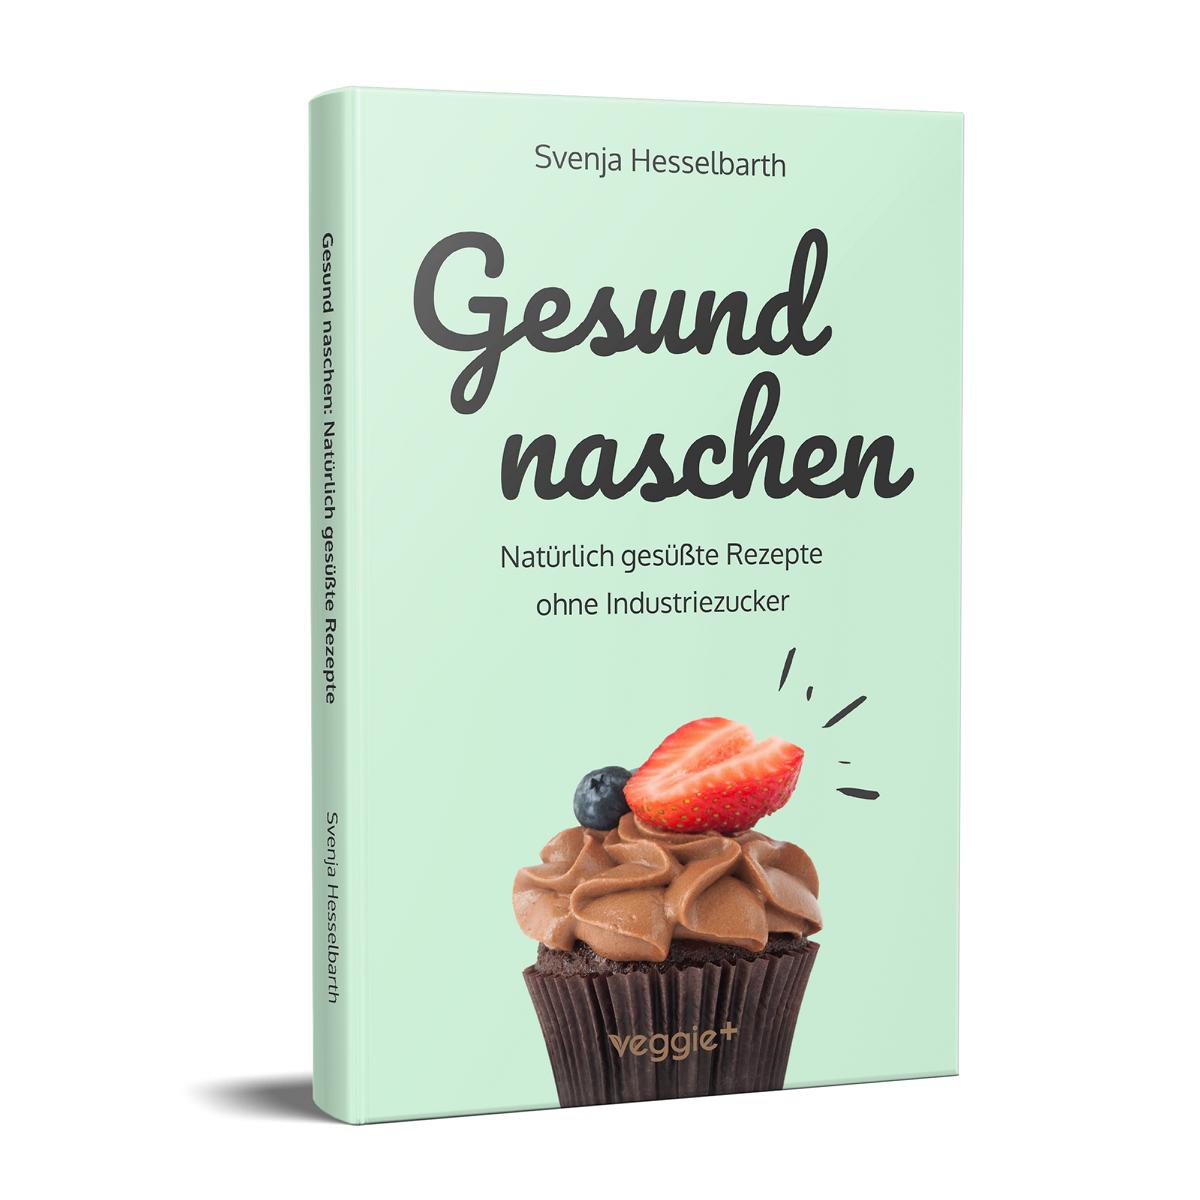 Gesund naschen: Natürliche Rezepte für gesunde Naschereien von Svenja Hesselbarth im veggie + Verlag